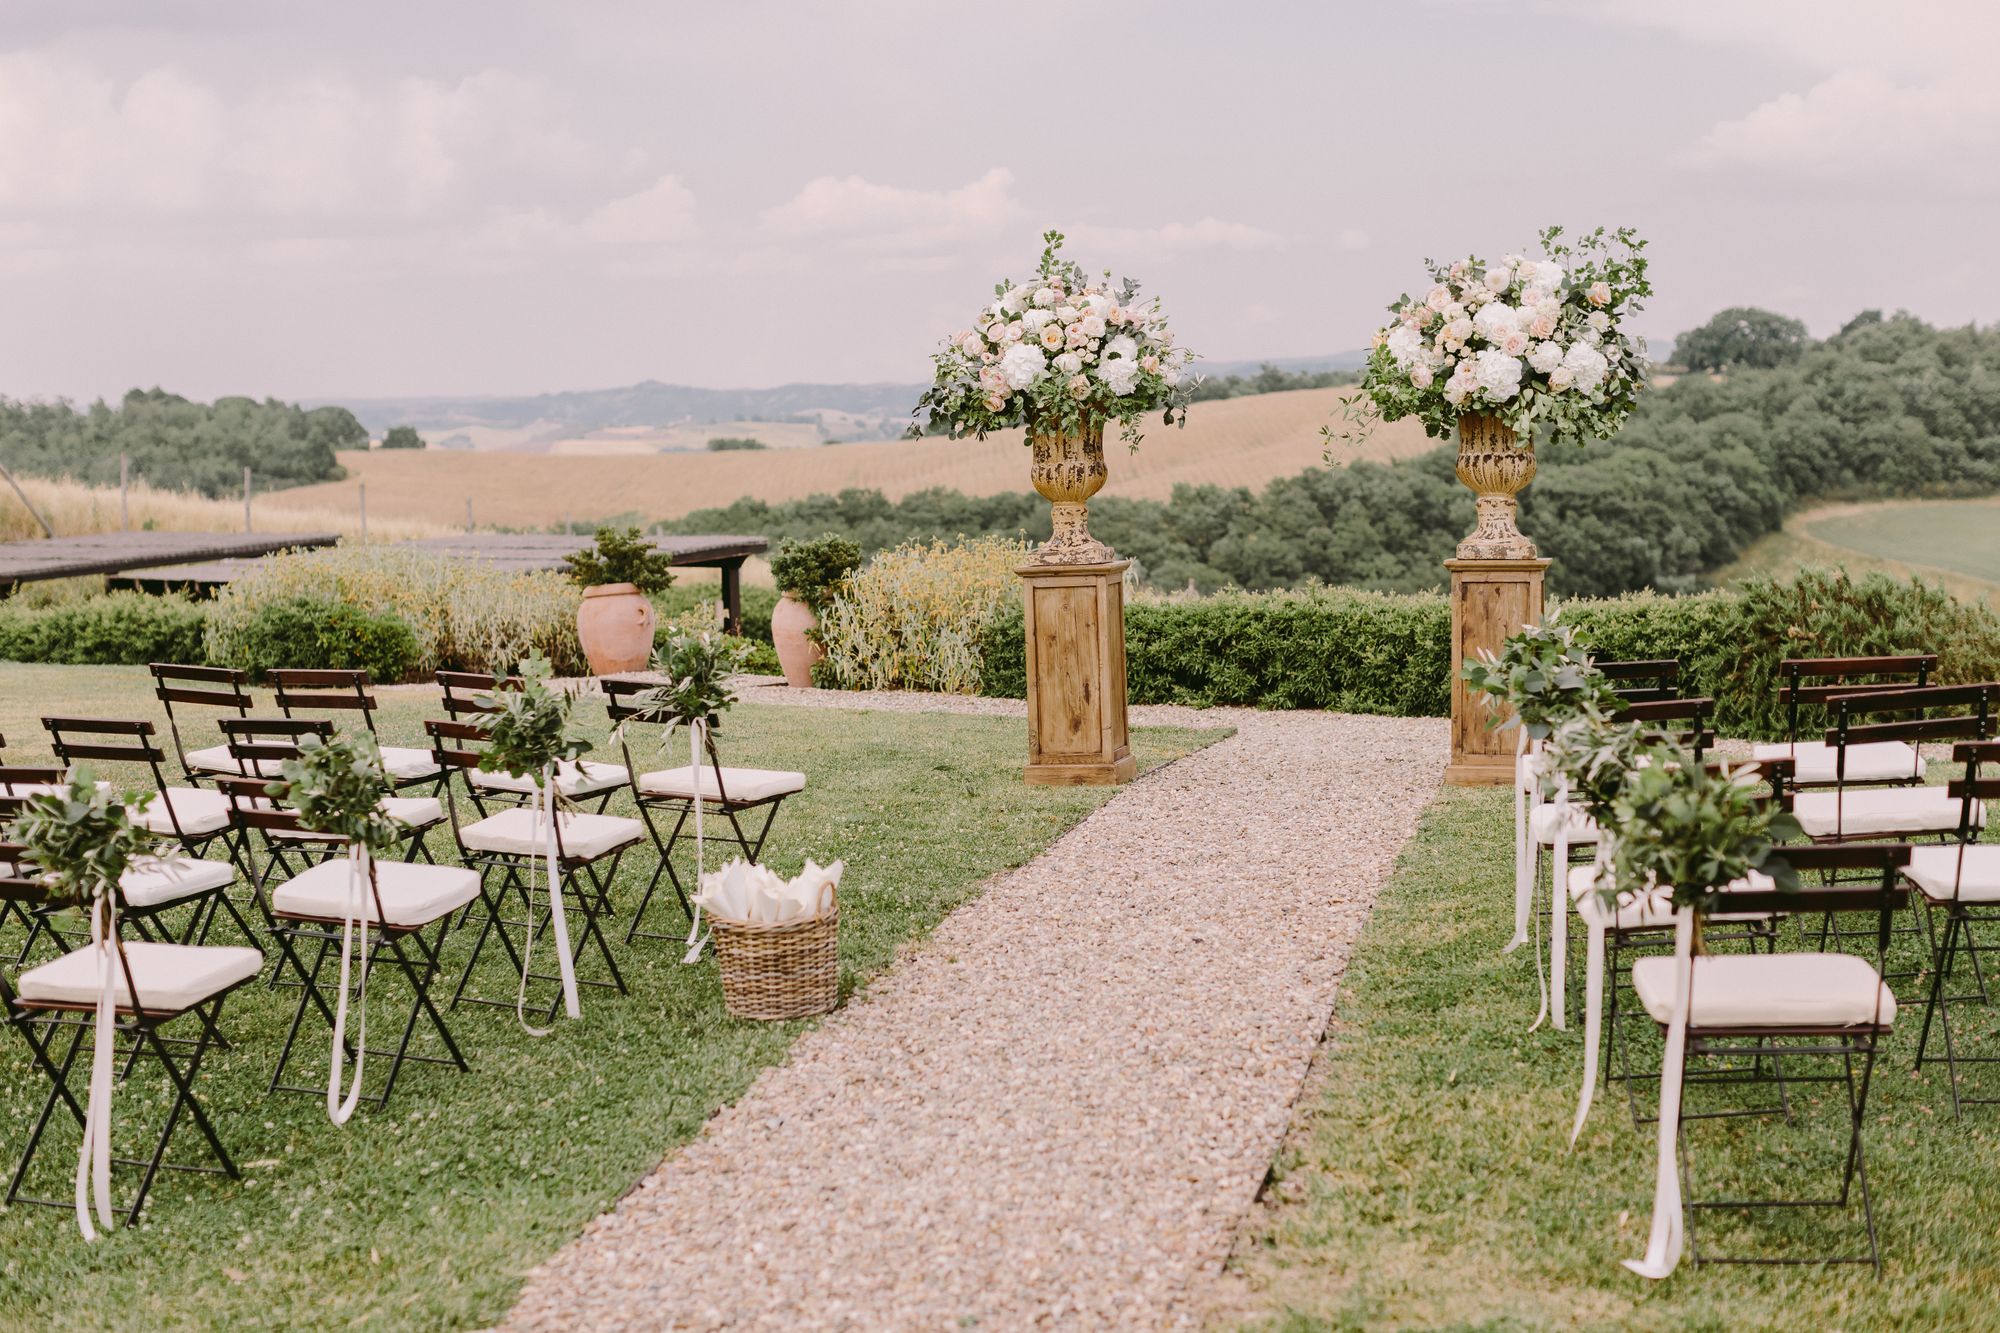 Eine Hochzeitszeremonie im Freien mit Stühlen und Blumen.